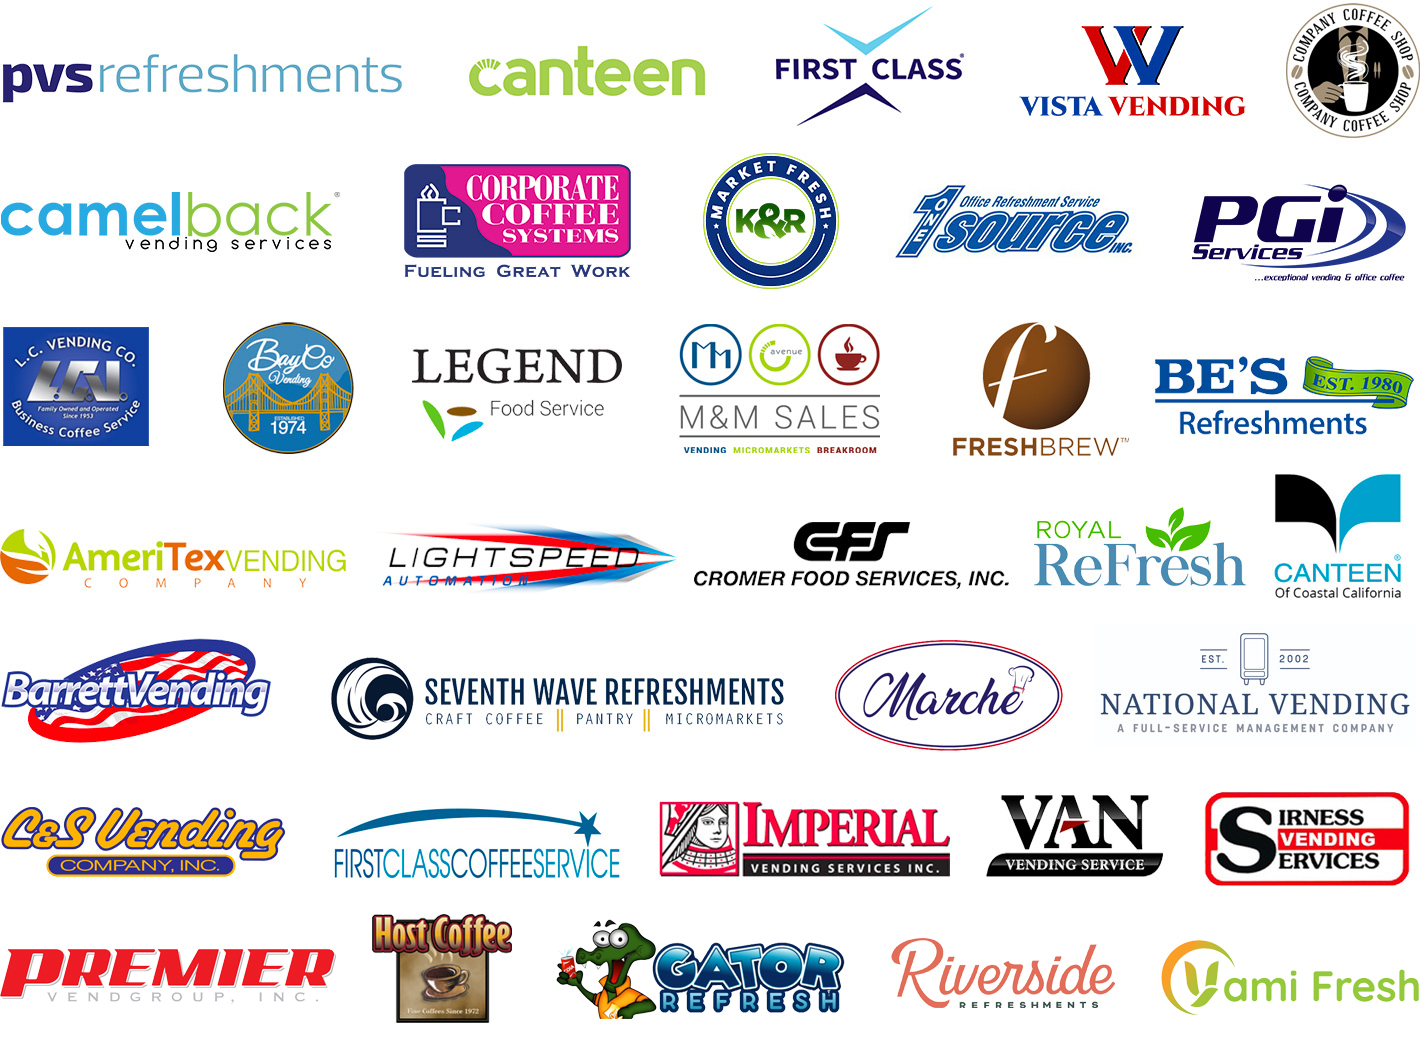 VendCentral's client logos